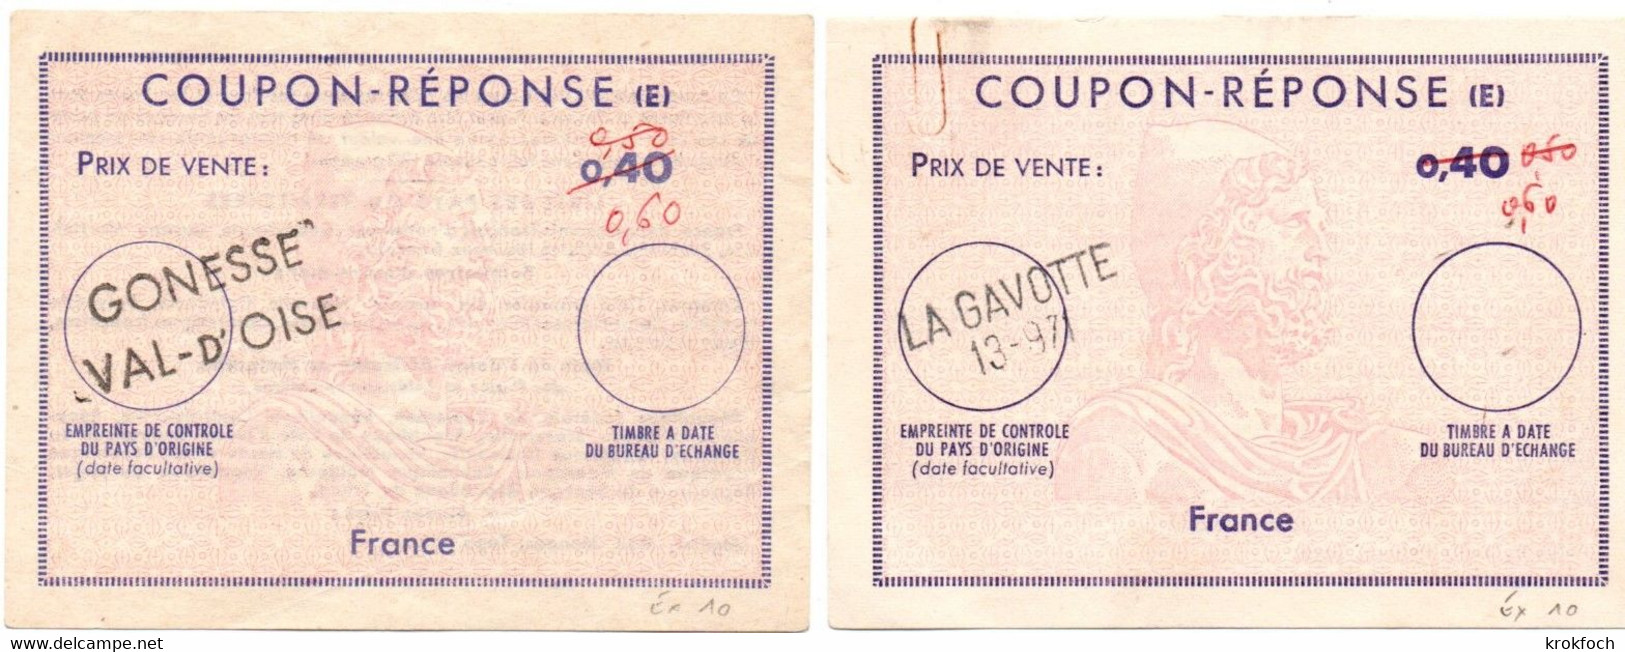 France - 2 Coupon-réponse Type Ex 10 - Griffe La Gavotte 13-971 & Gonesse Val D'Oise - IAS CRI IRC - Antwoordbons